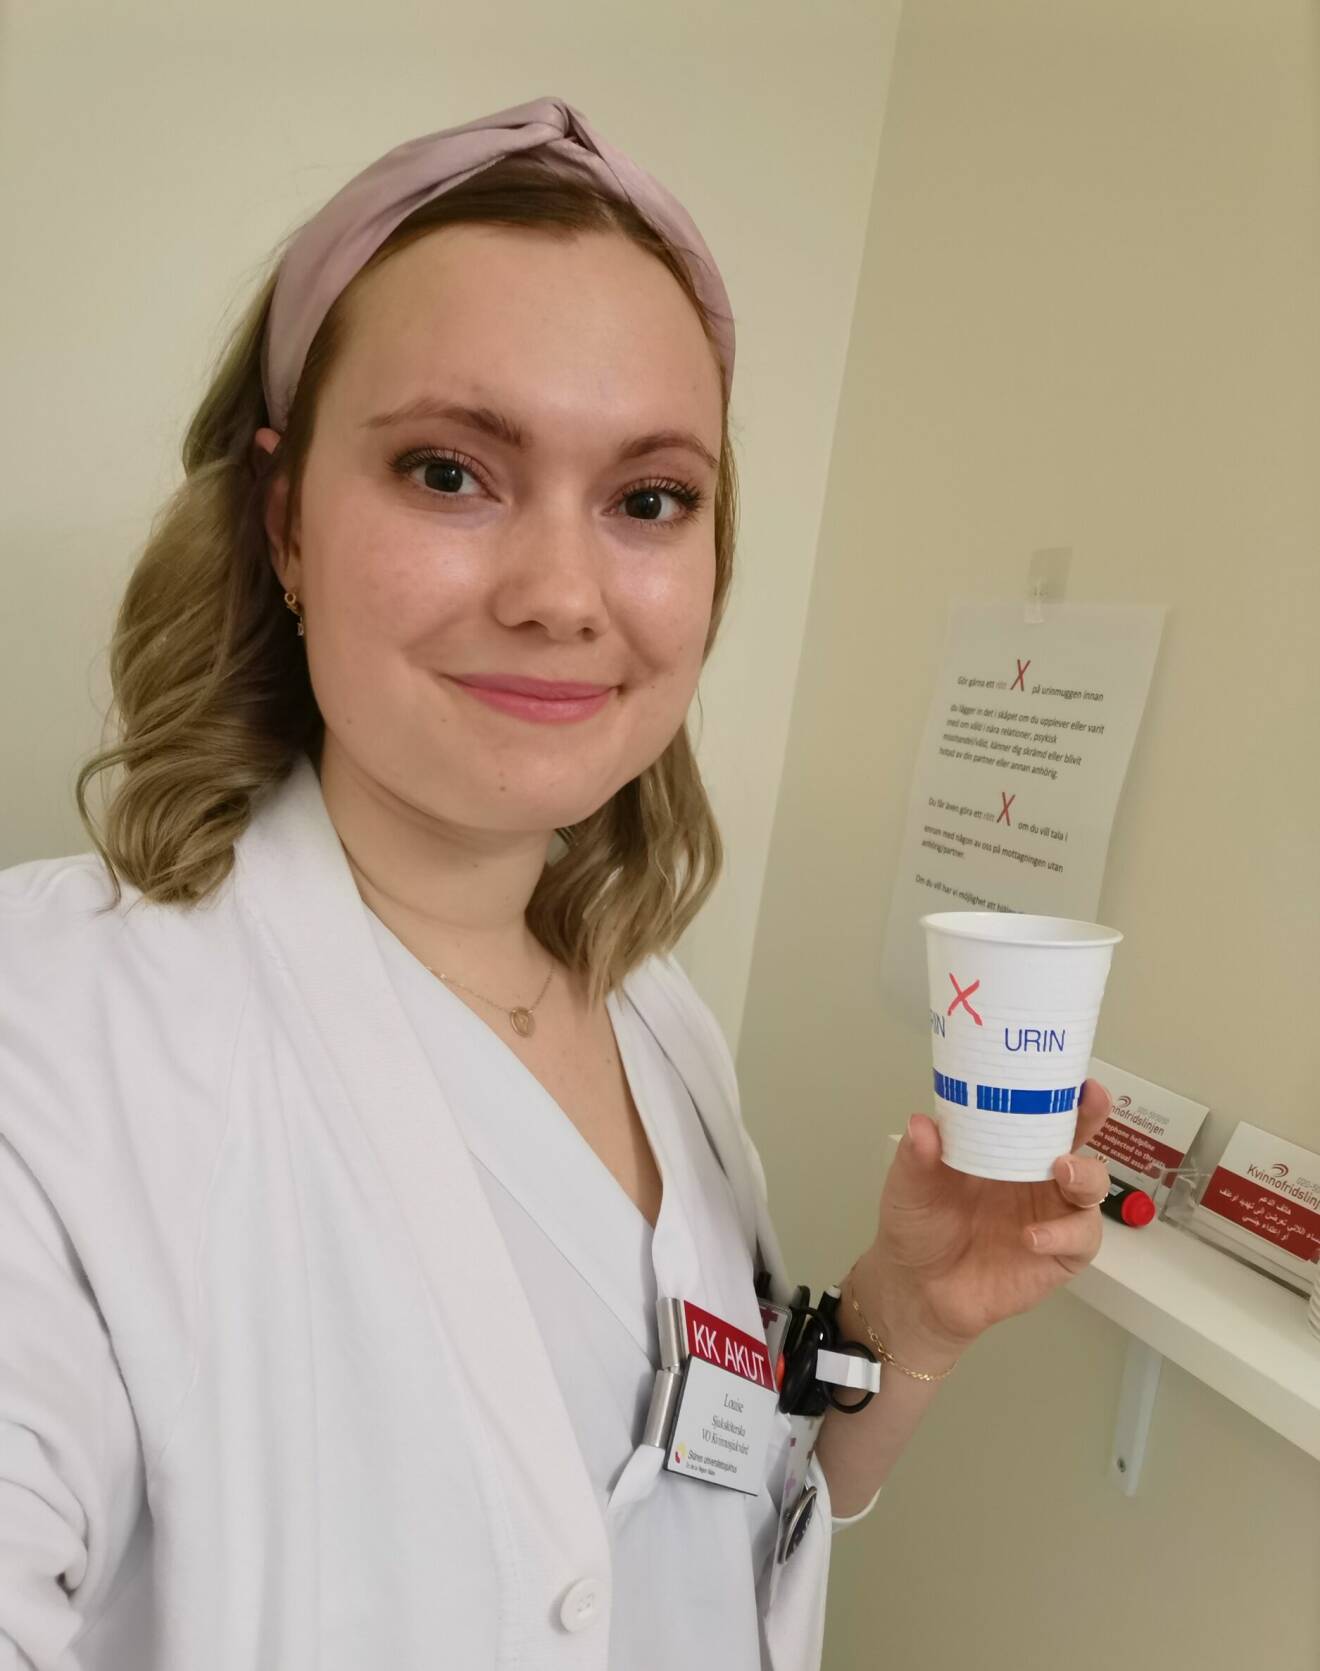 Louise Frank, sjuksköterska på gynakuten i Lund, visar hur våldsutsatta kvinnor kan sätta ett rött kryss på muggen för urinprov för att signalera att de vill ha hjälp.